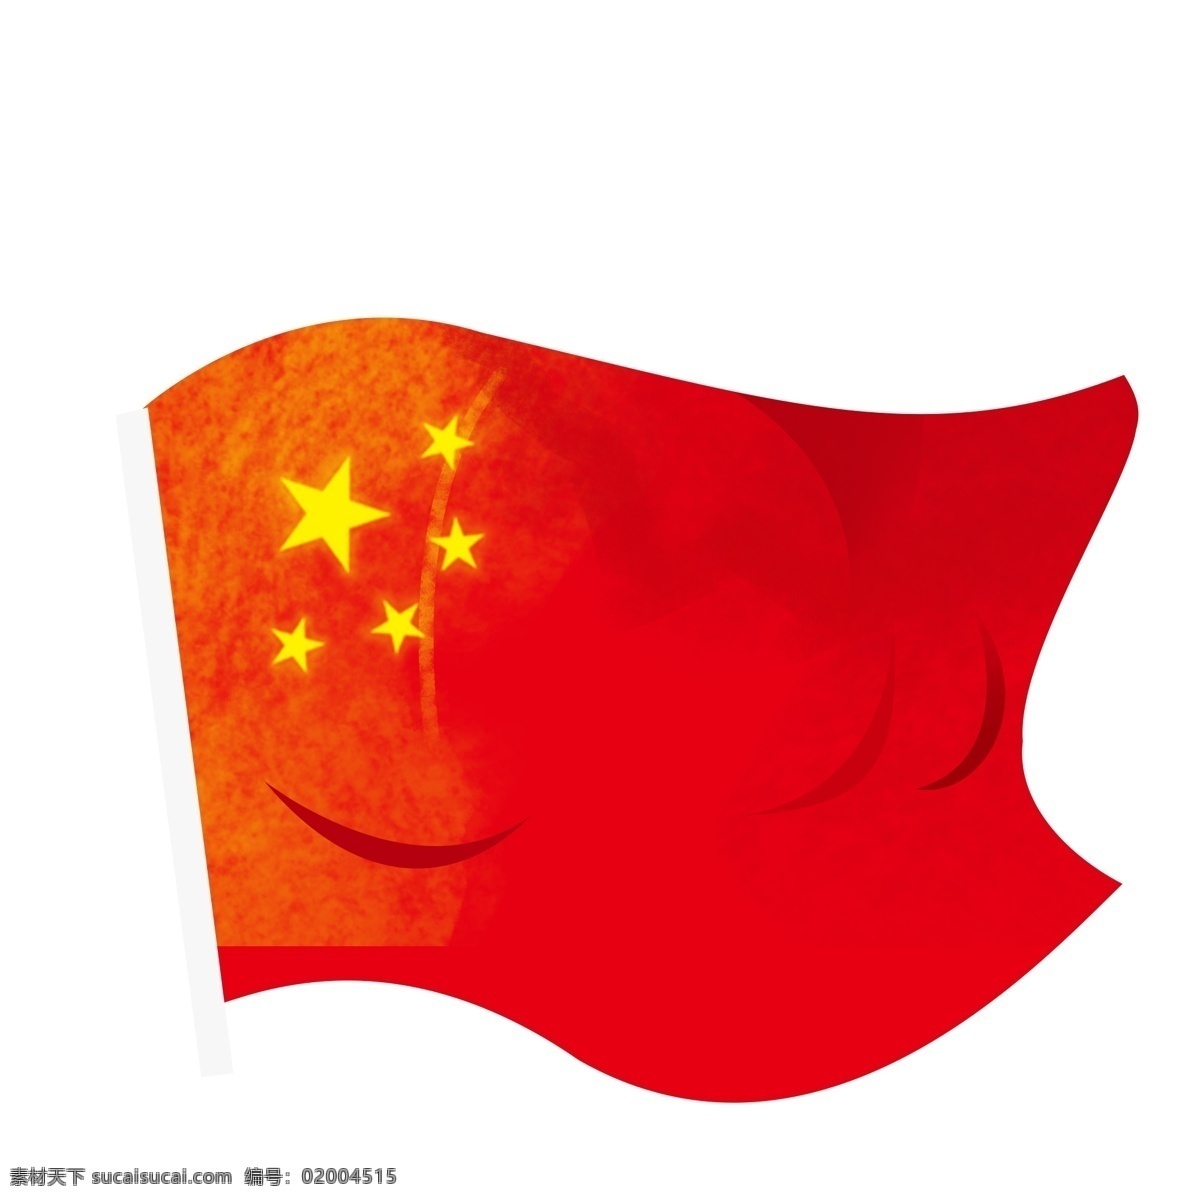 手绘 五星红旗 元素 红色 中国风 卡通 国旗 插画 旗子 飘扬红旗 五星